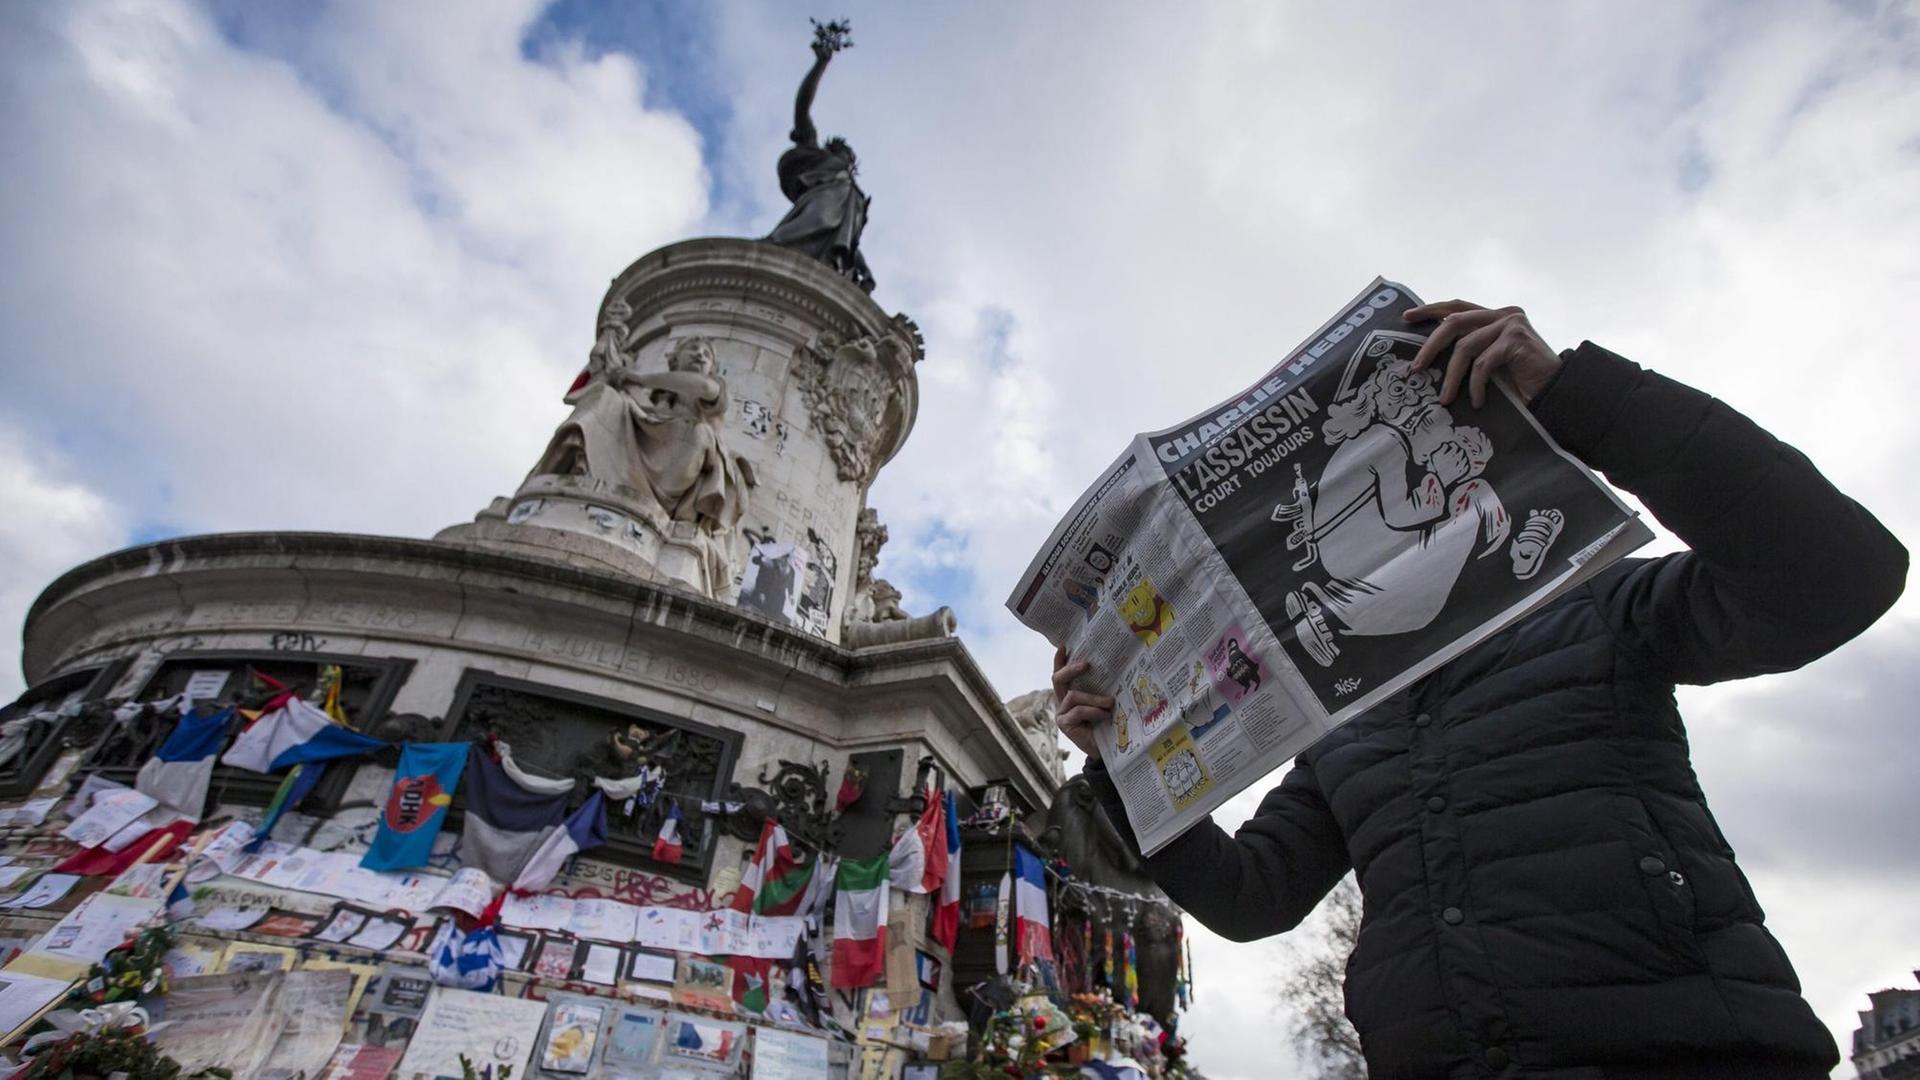 Die erste Ausgabe von "Charlie Hebdo" nach dem Anschlag vom 7. Januar 2015.